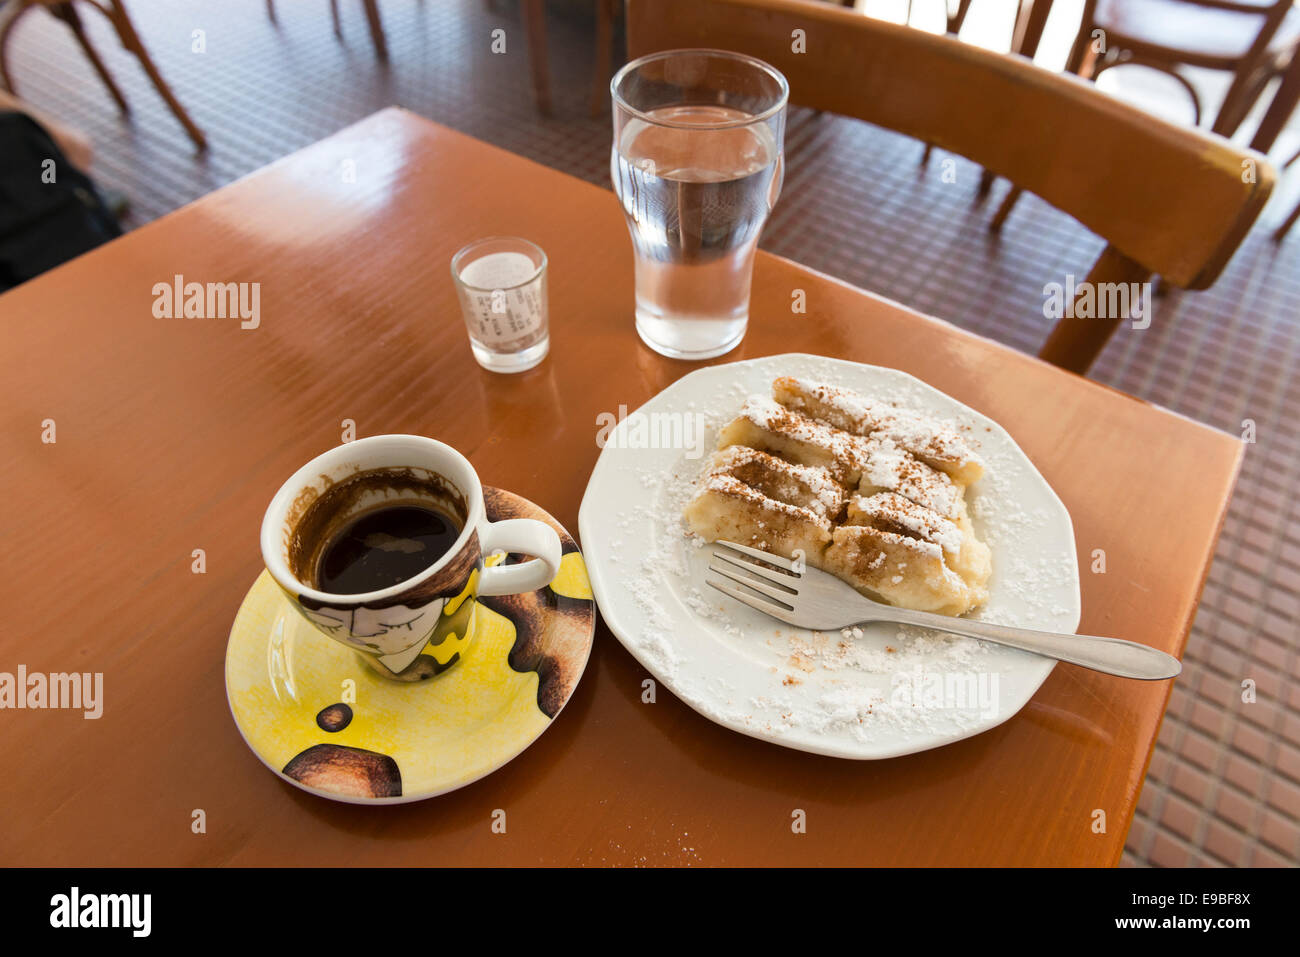 Stilllife de pâte (Baklava) sur assiette, tasse de café à la Grecque un verre d'eau et le projet de loi dans un verre, île de Kos, Grèce Banque D'Images